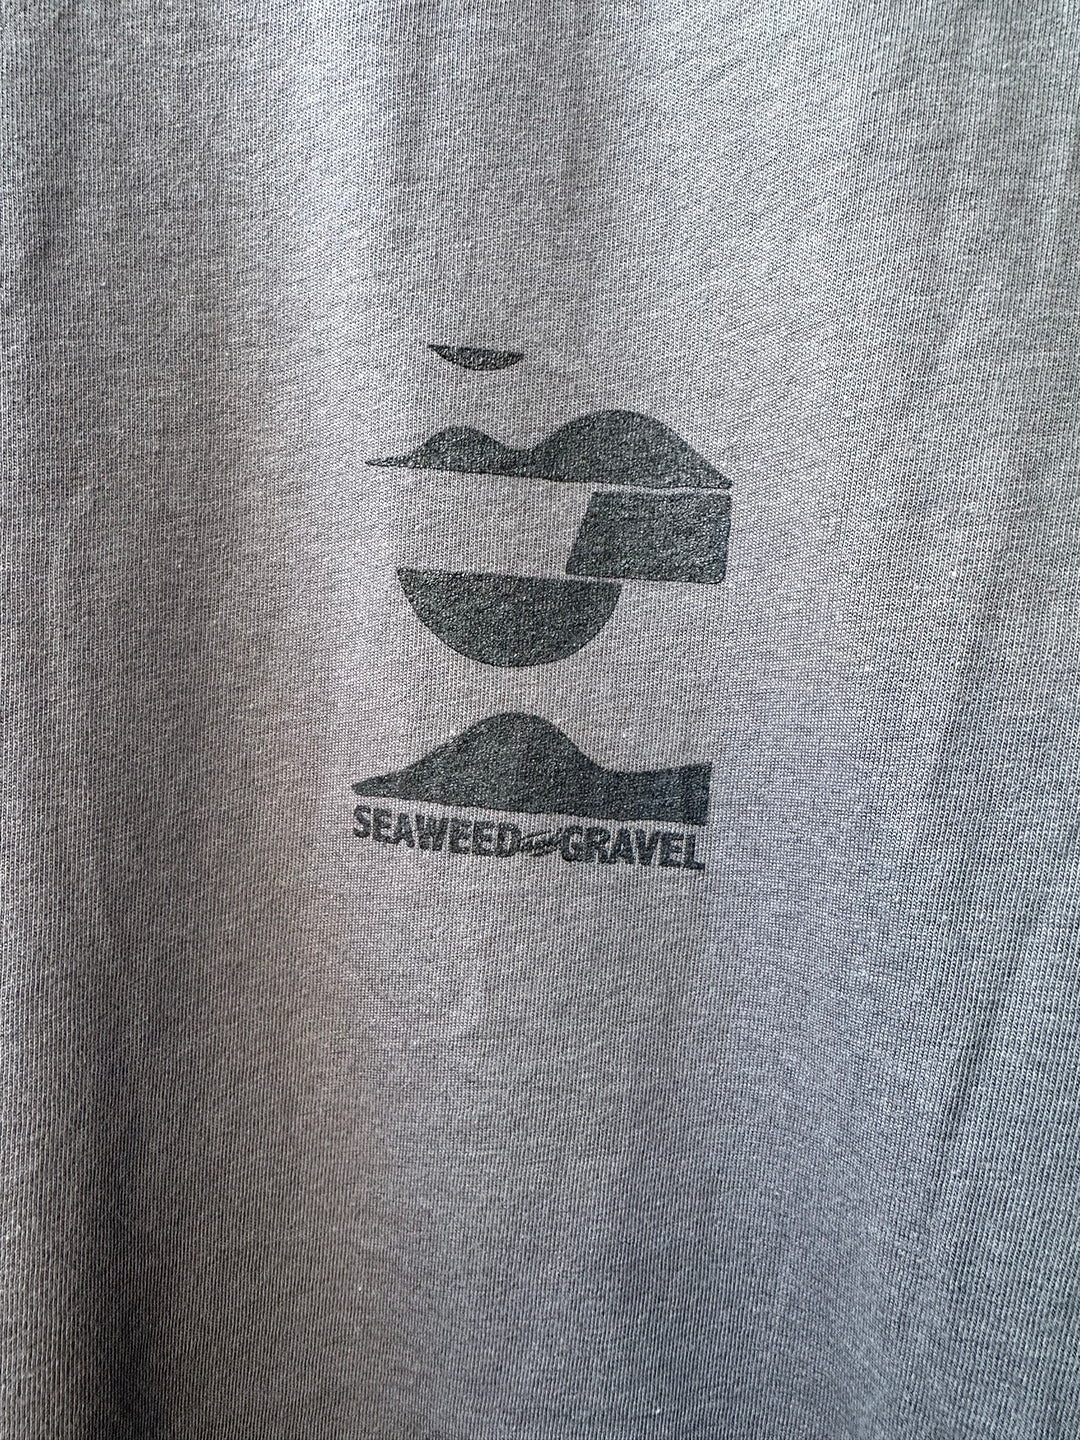 Seaweed and Gravel – Seaweed & Gravel